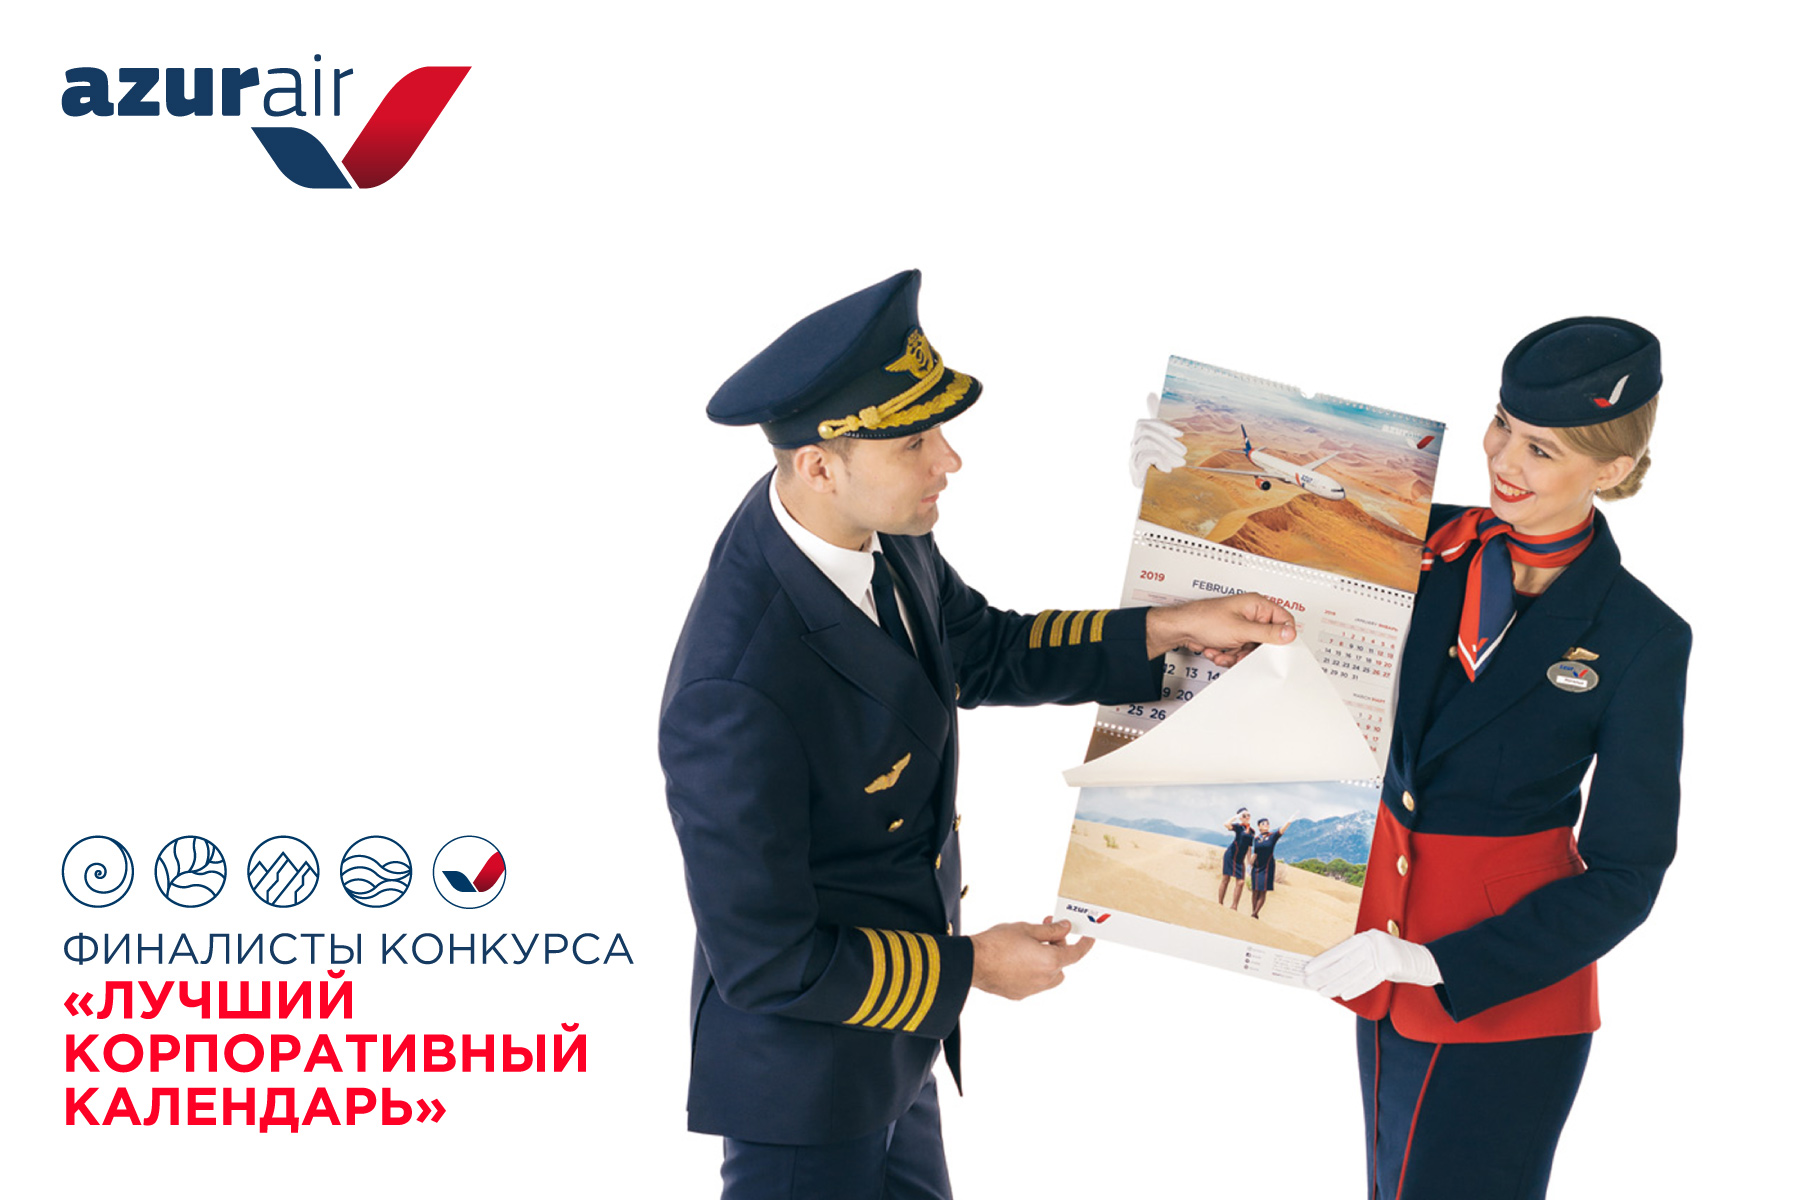 AZUR air, Новости, 27 марта 2019, AZUR air вошла в число победителей конкурса «Корпоративный календарь-2019»